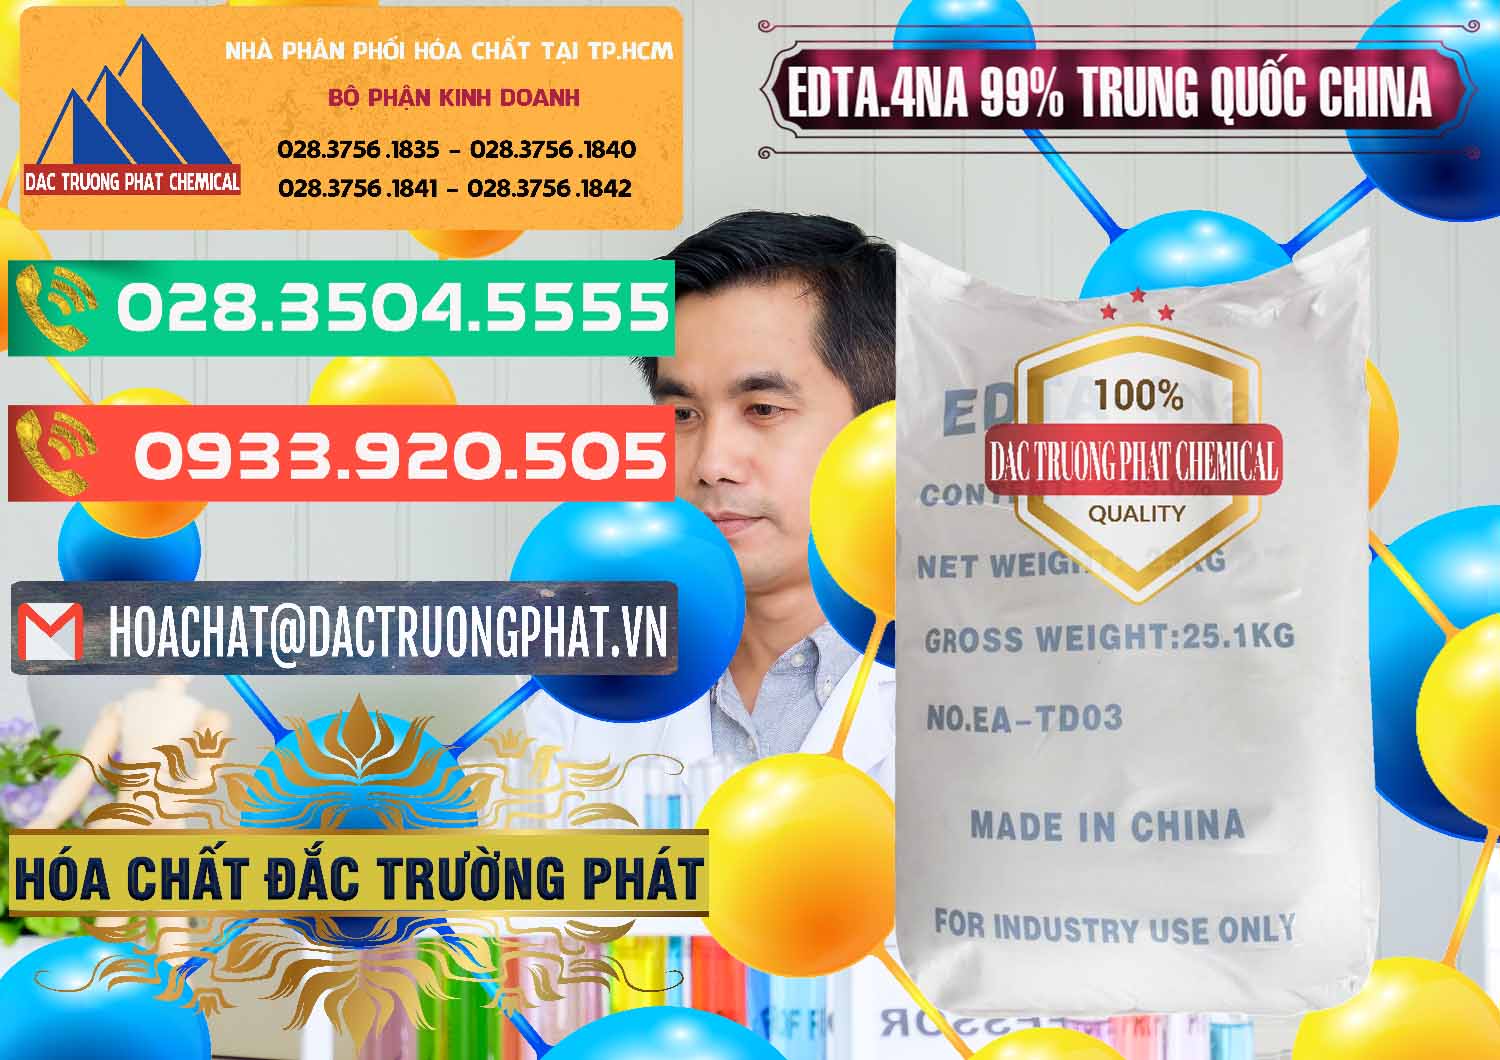 Đơn vị chuyên bán - phân phối EDTA.4NA - EDTA Muối 99% Trung Quốc China - 0292 - Cty cung cấp ( kinh doanh ) hóa chất tại TP.HCM - congtyhoachat.com.vn